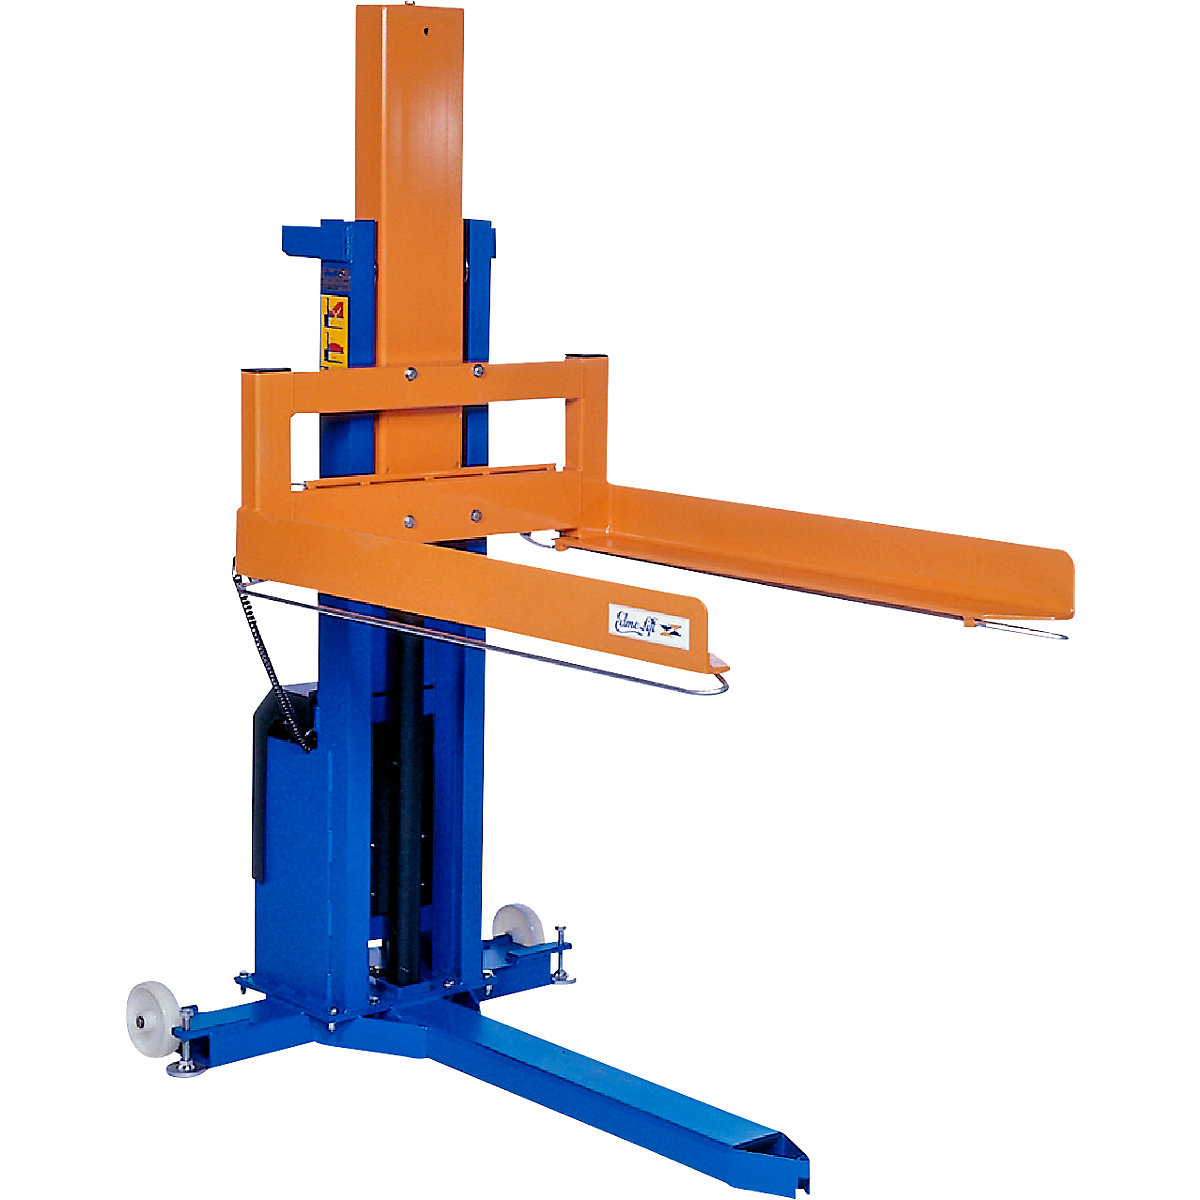 Pallet lifter – Edmolift, no tilt function, lifting range 70 – 970 mm, max. load 750 kg